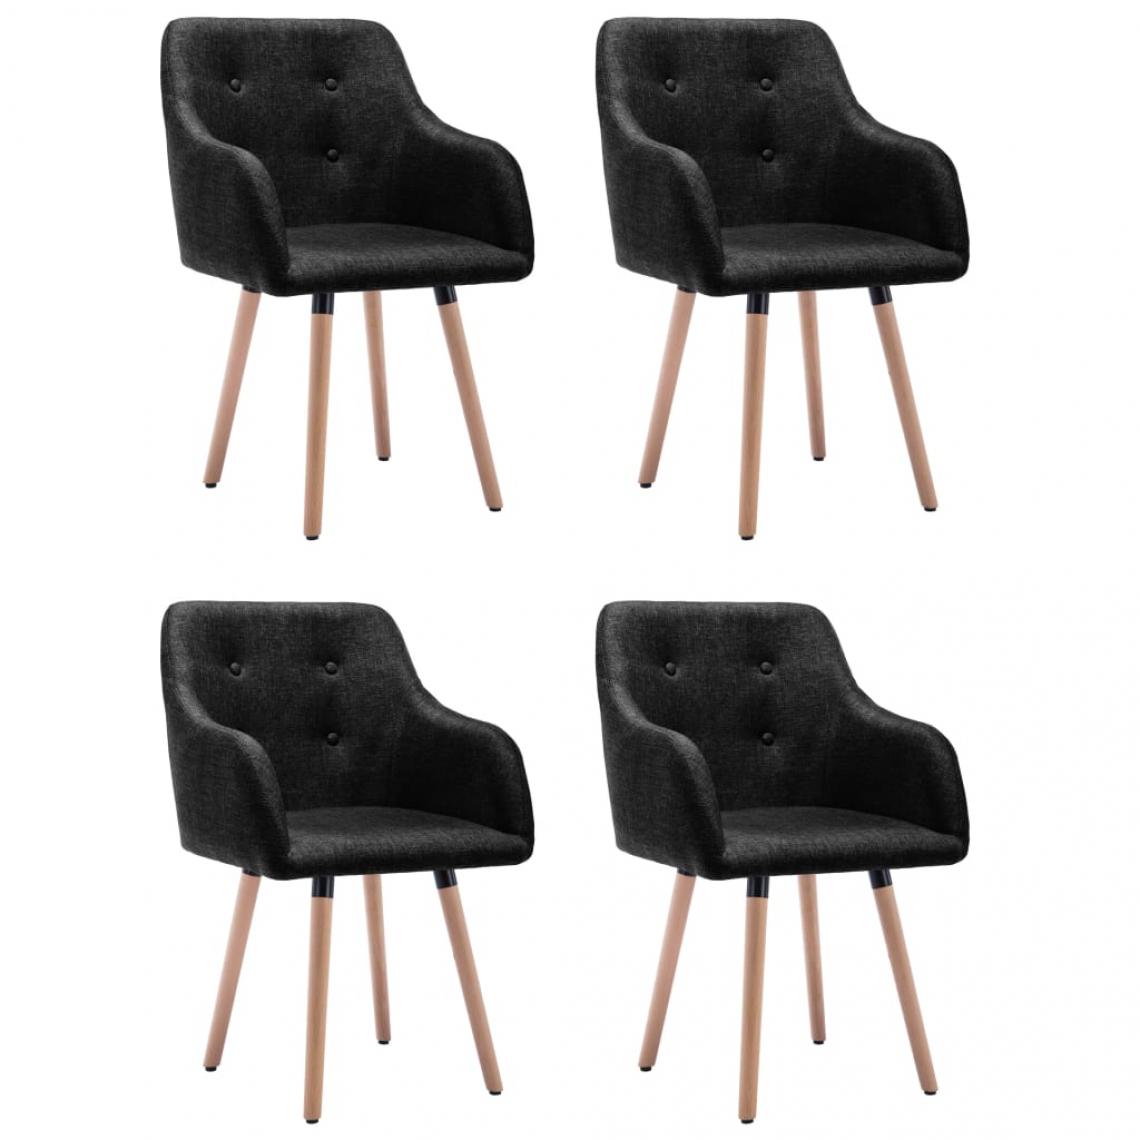 Decoshop26 - Lot de 4 chaises de salle à manger cuisine design moderne tissu noir CDS021849 - Chaises